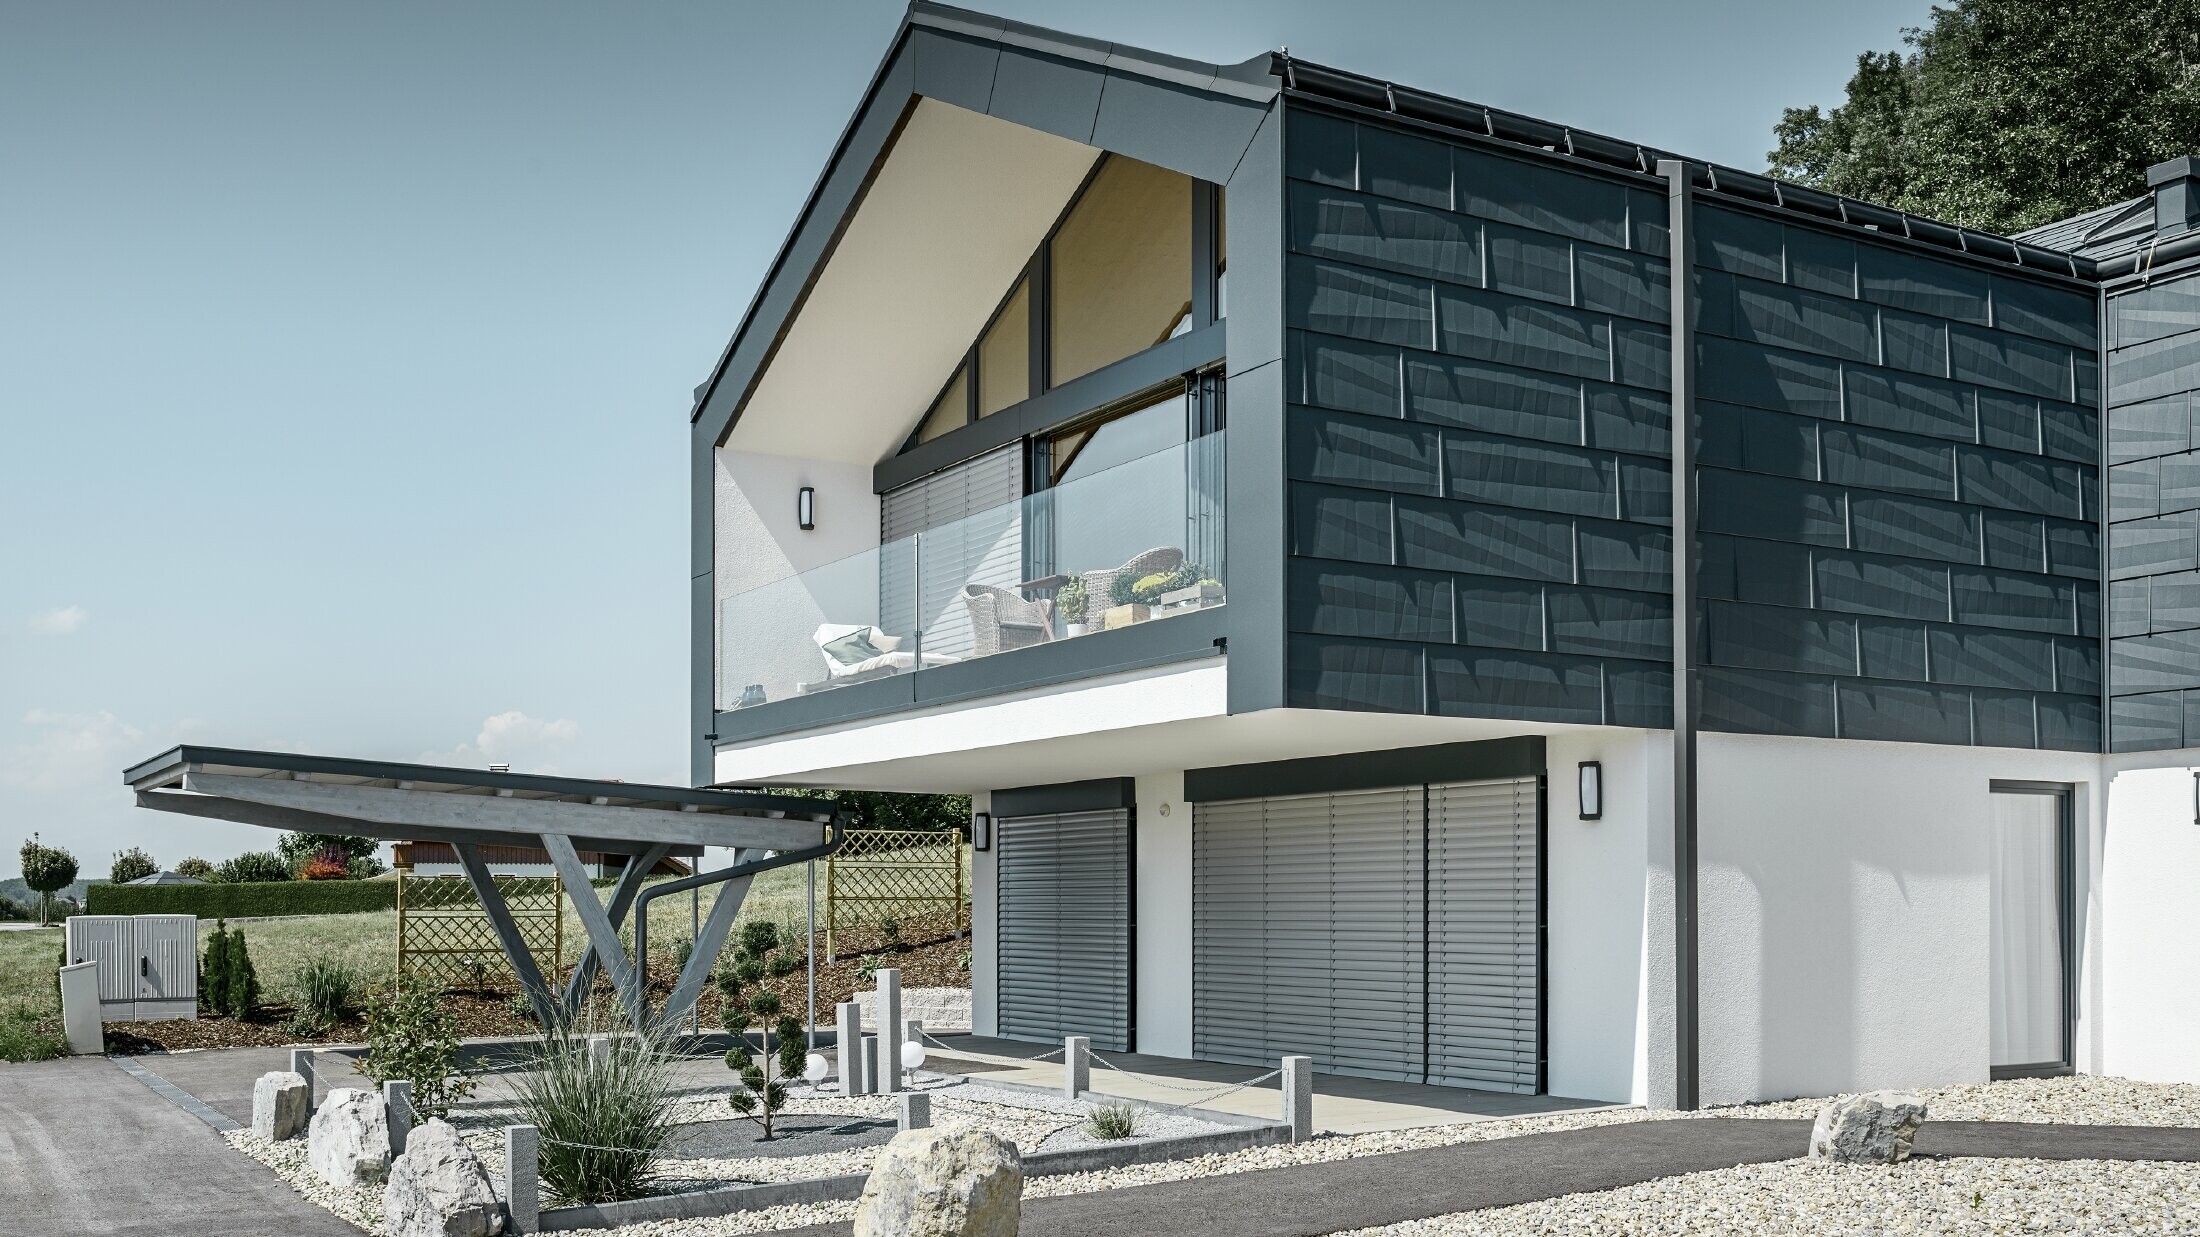 Moderna višeobiteljska kuća s velikim prozorskim pročeljem, krovom i fasadom obložena je PREFA krovnim i fasadnim panelom FX.12 u antracit boji